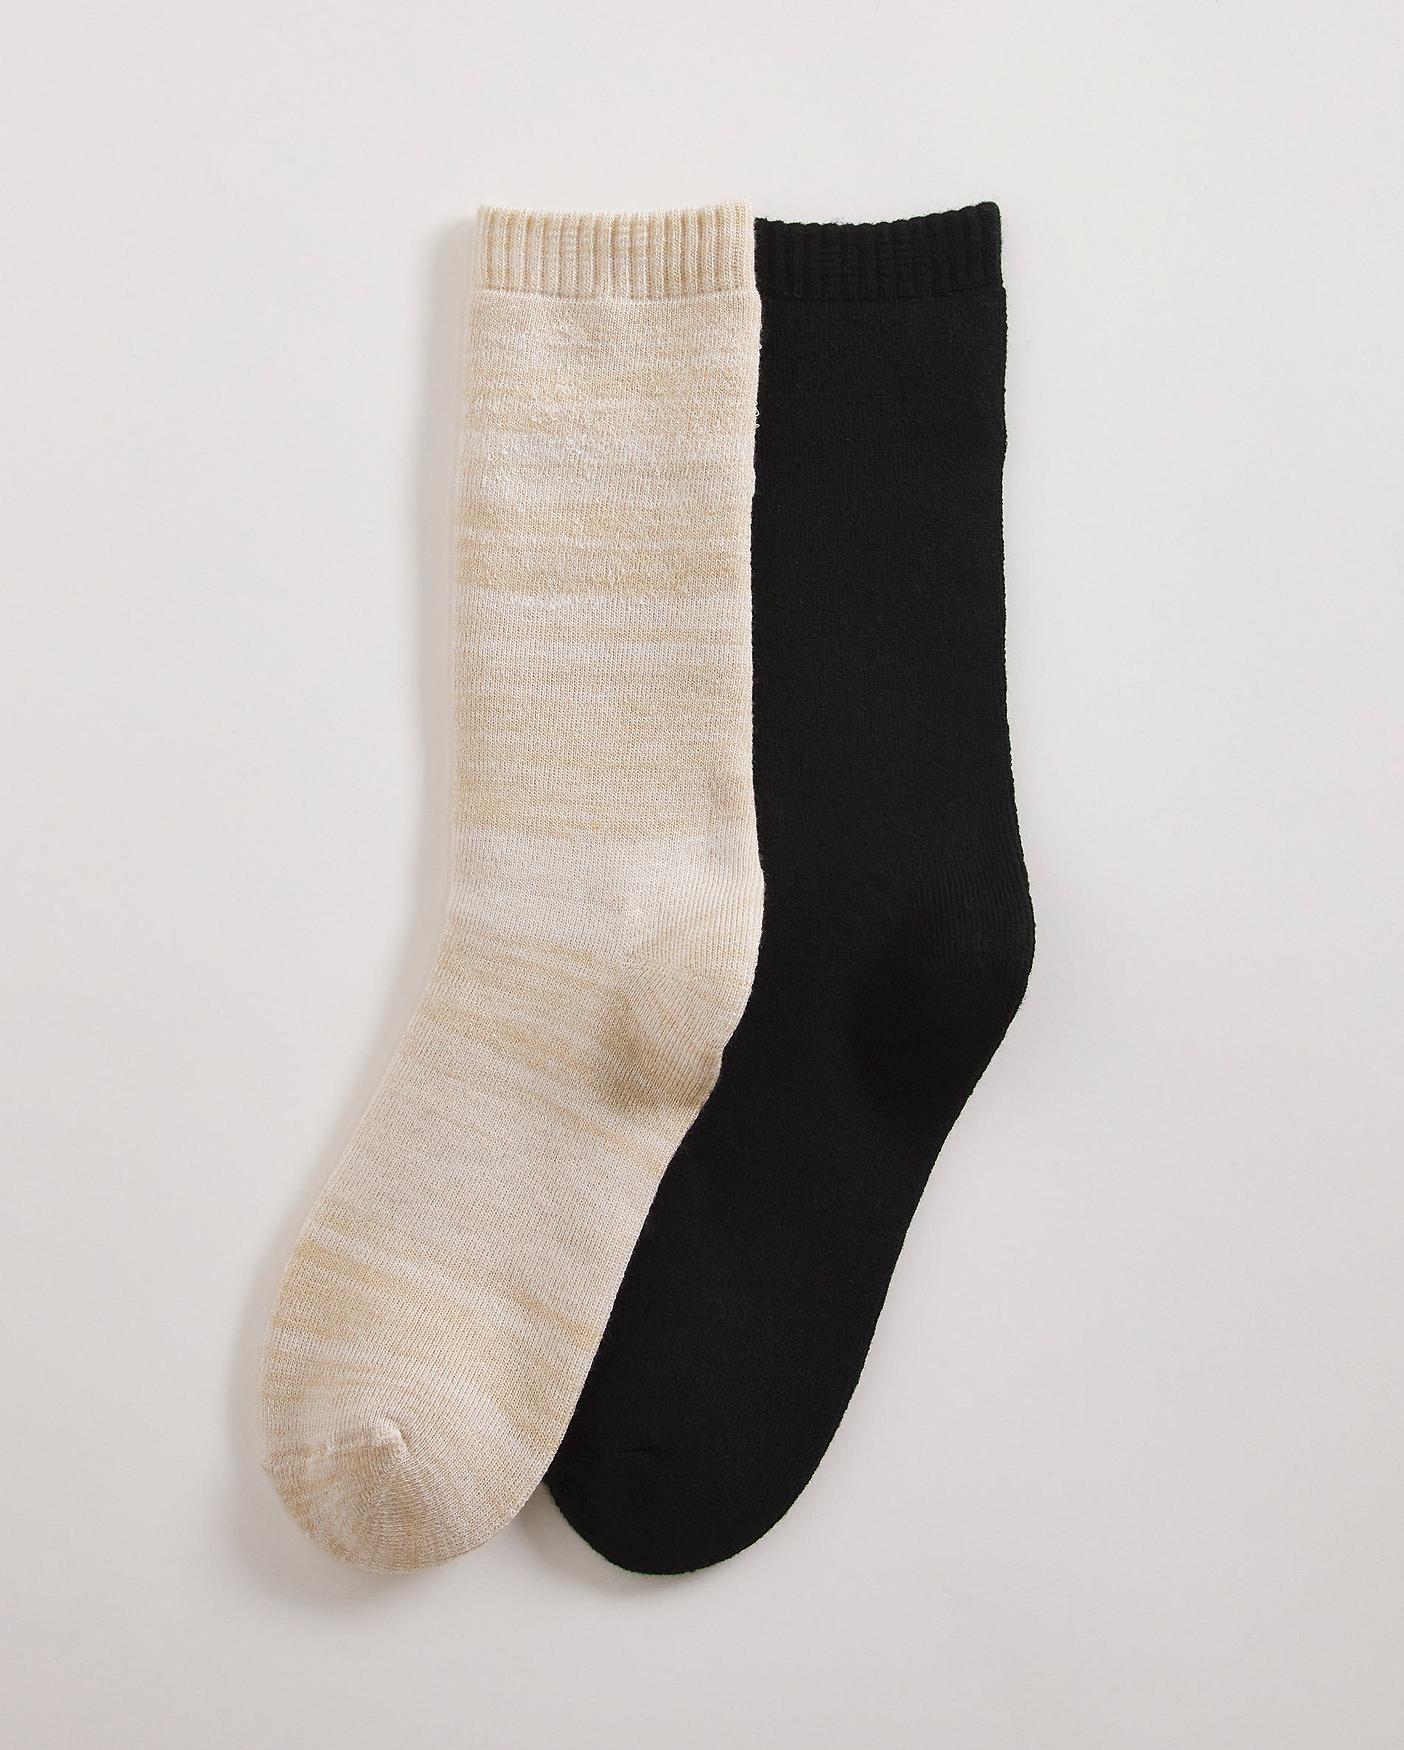 Ted Baker Socks for Men, Online Sale up to 19% off